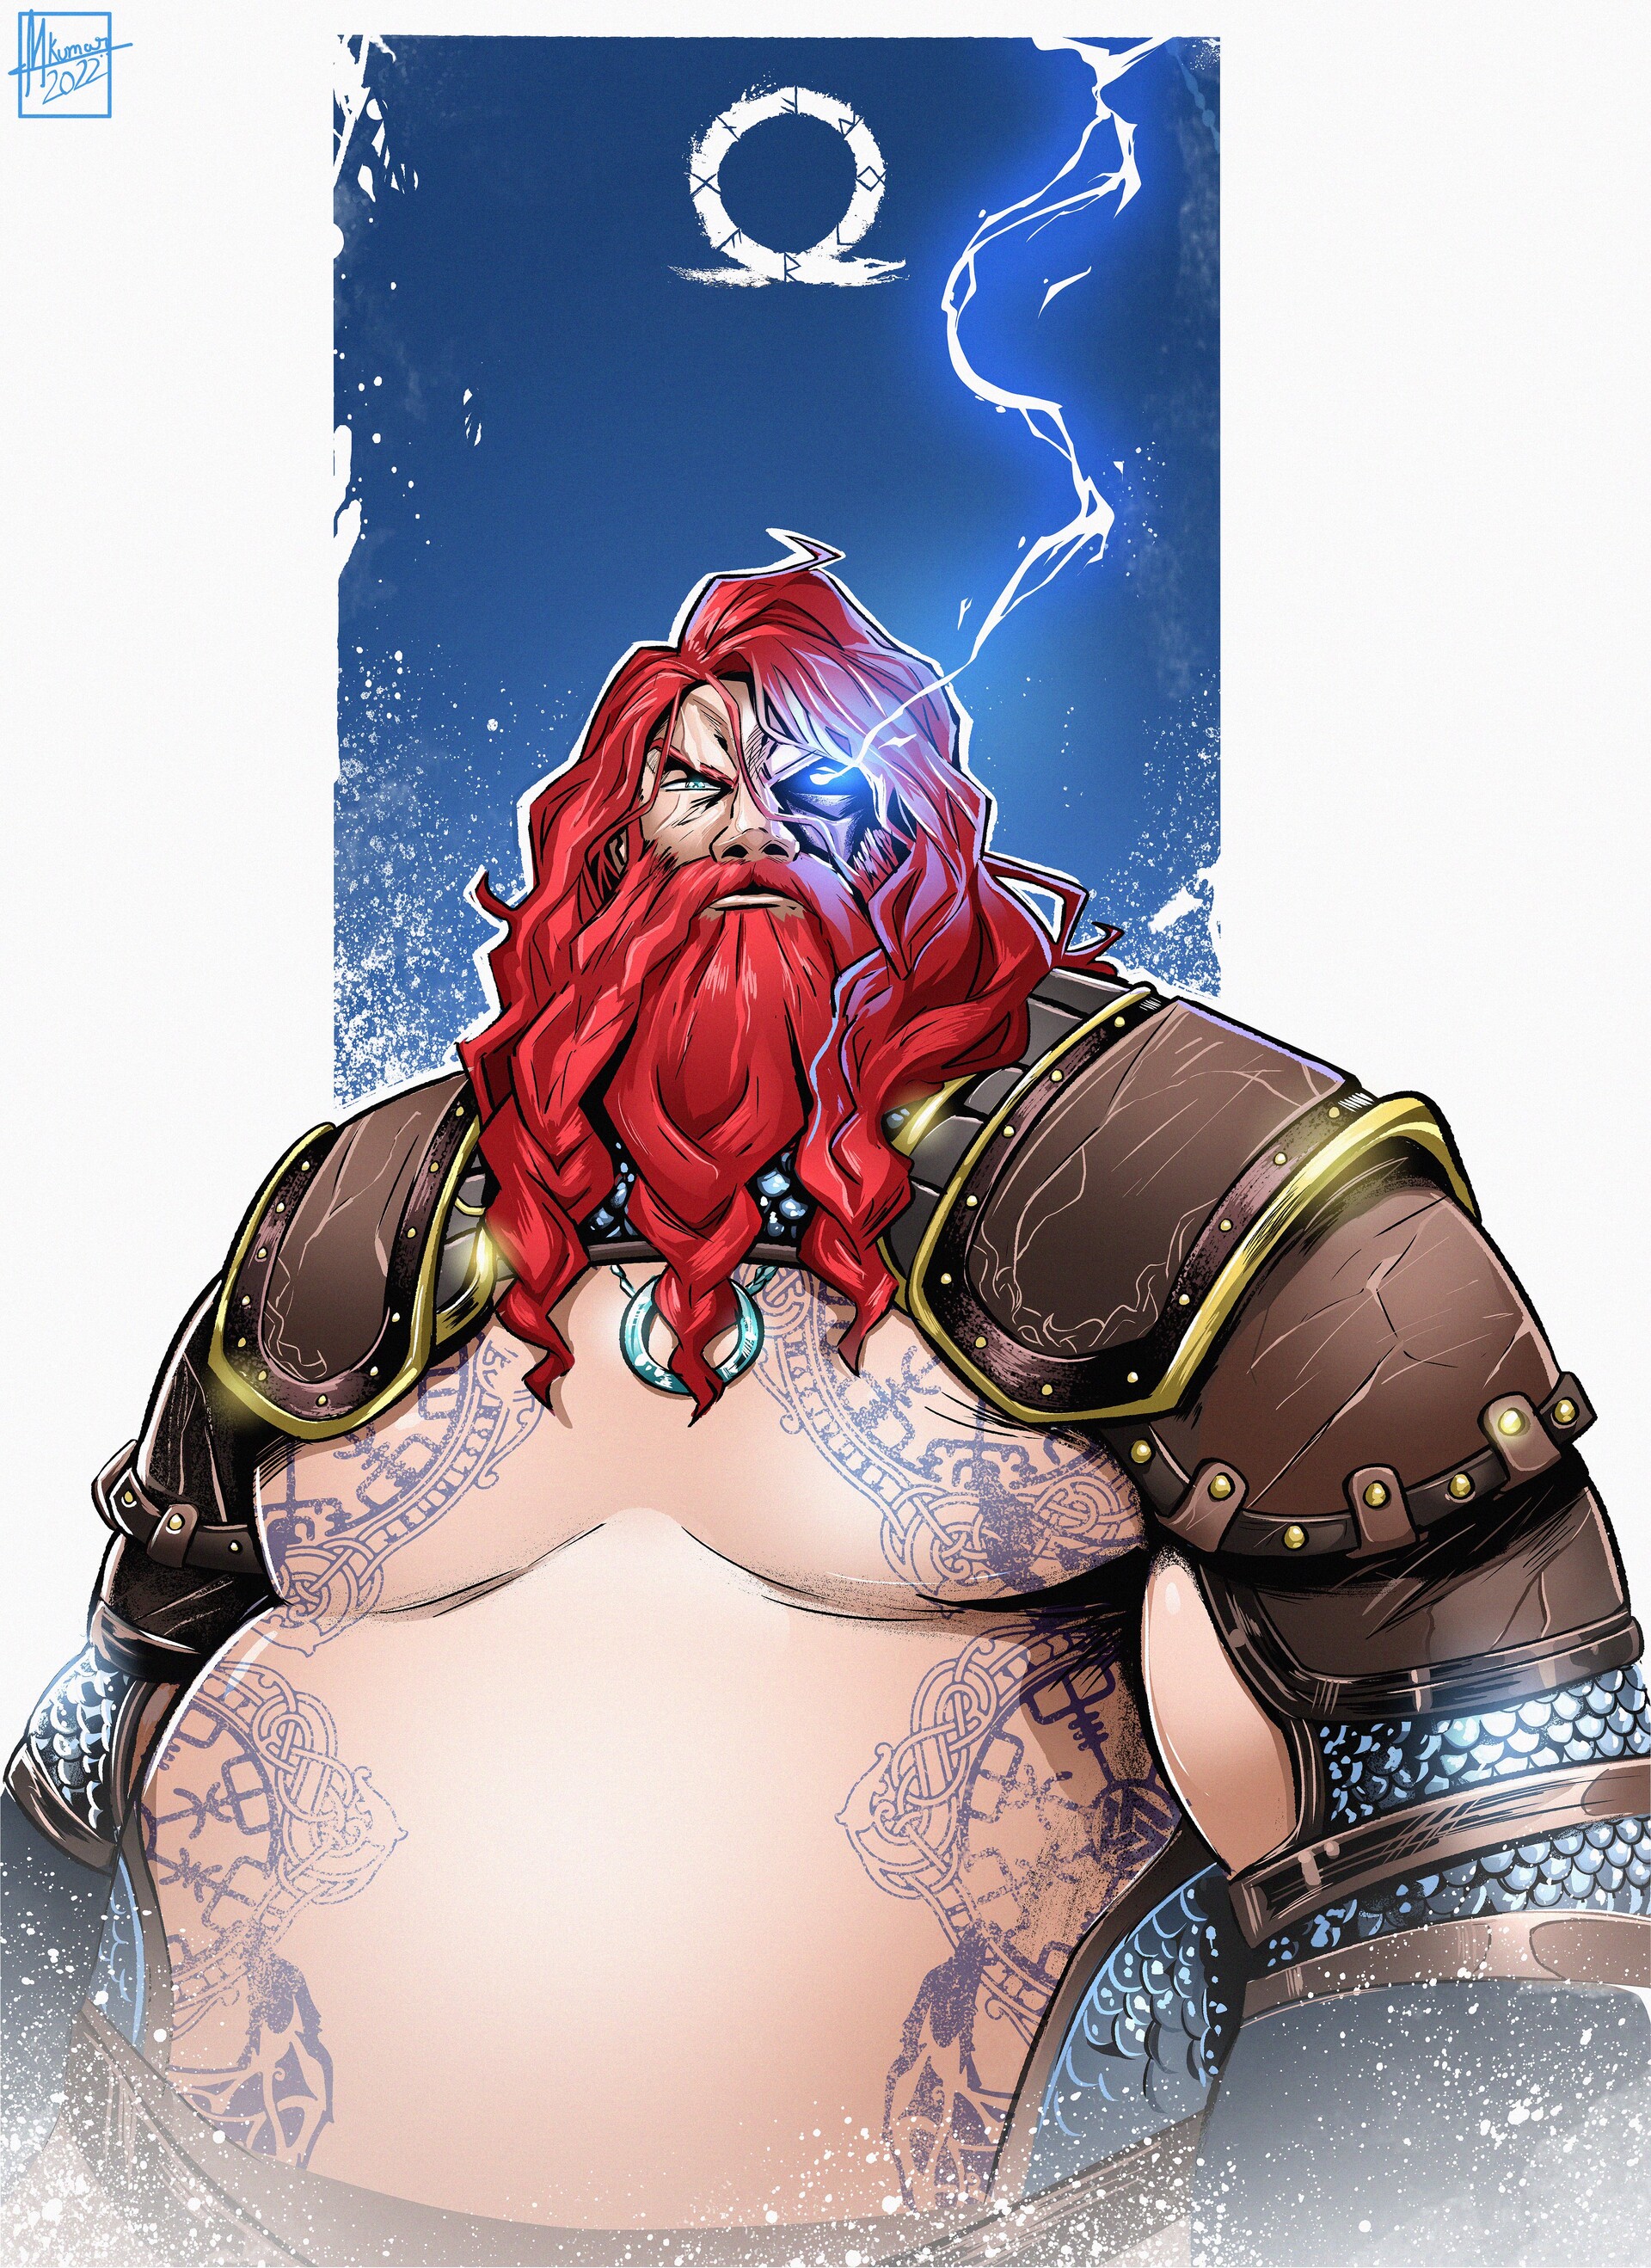 Fanart] Thor Odinson (by Deimos Art) : r/GodofWar